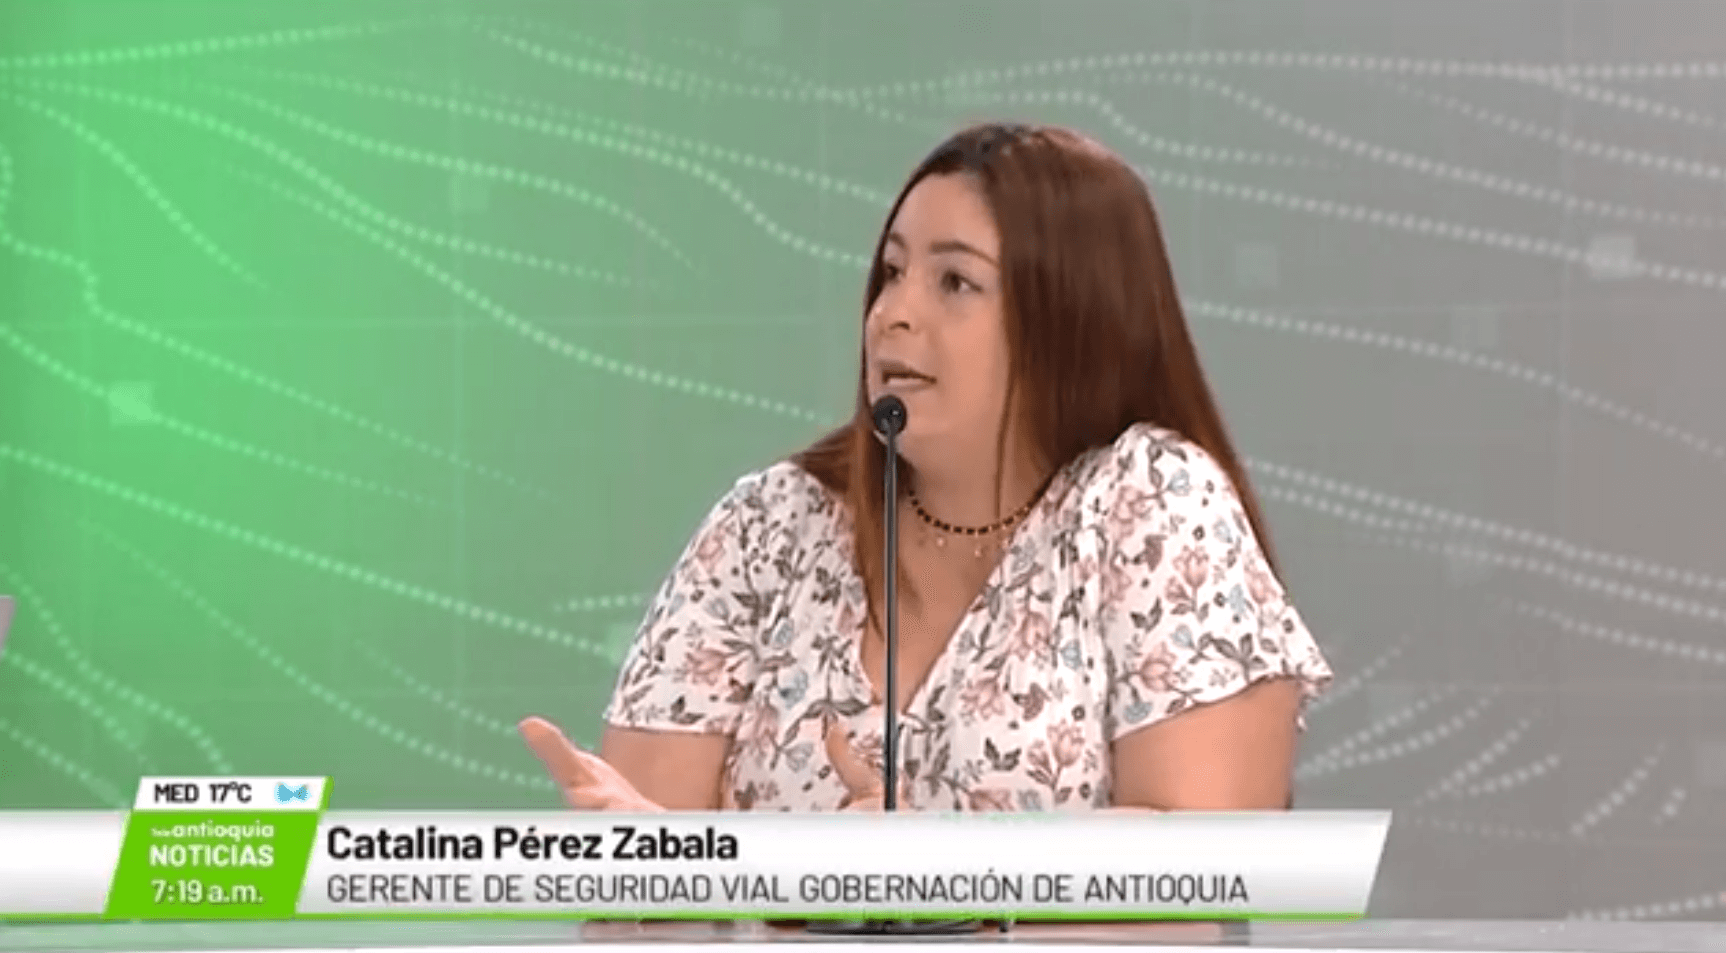 Catalina Pérez Zabala, gerente de seguridad vial Gobernación de Antioquia